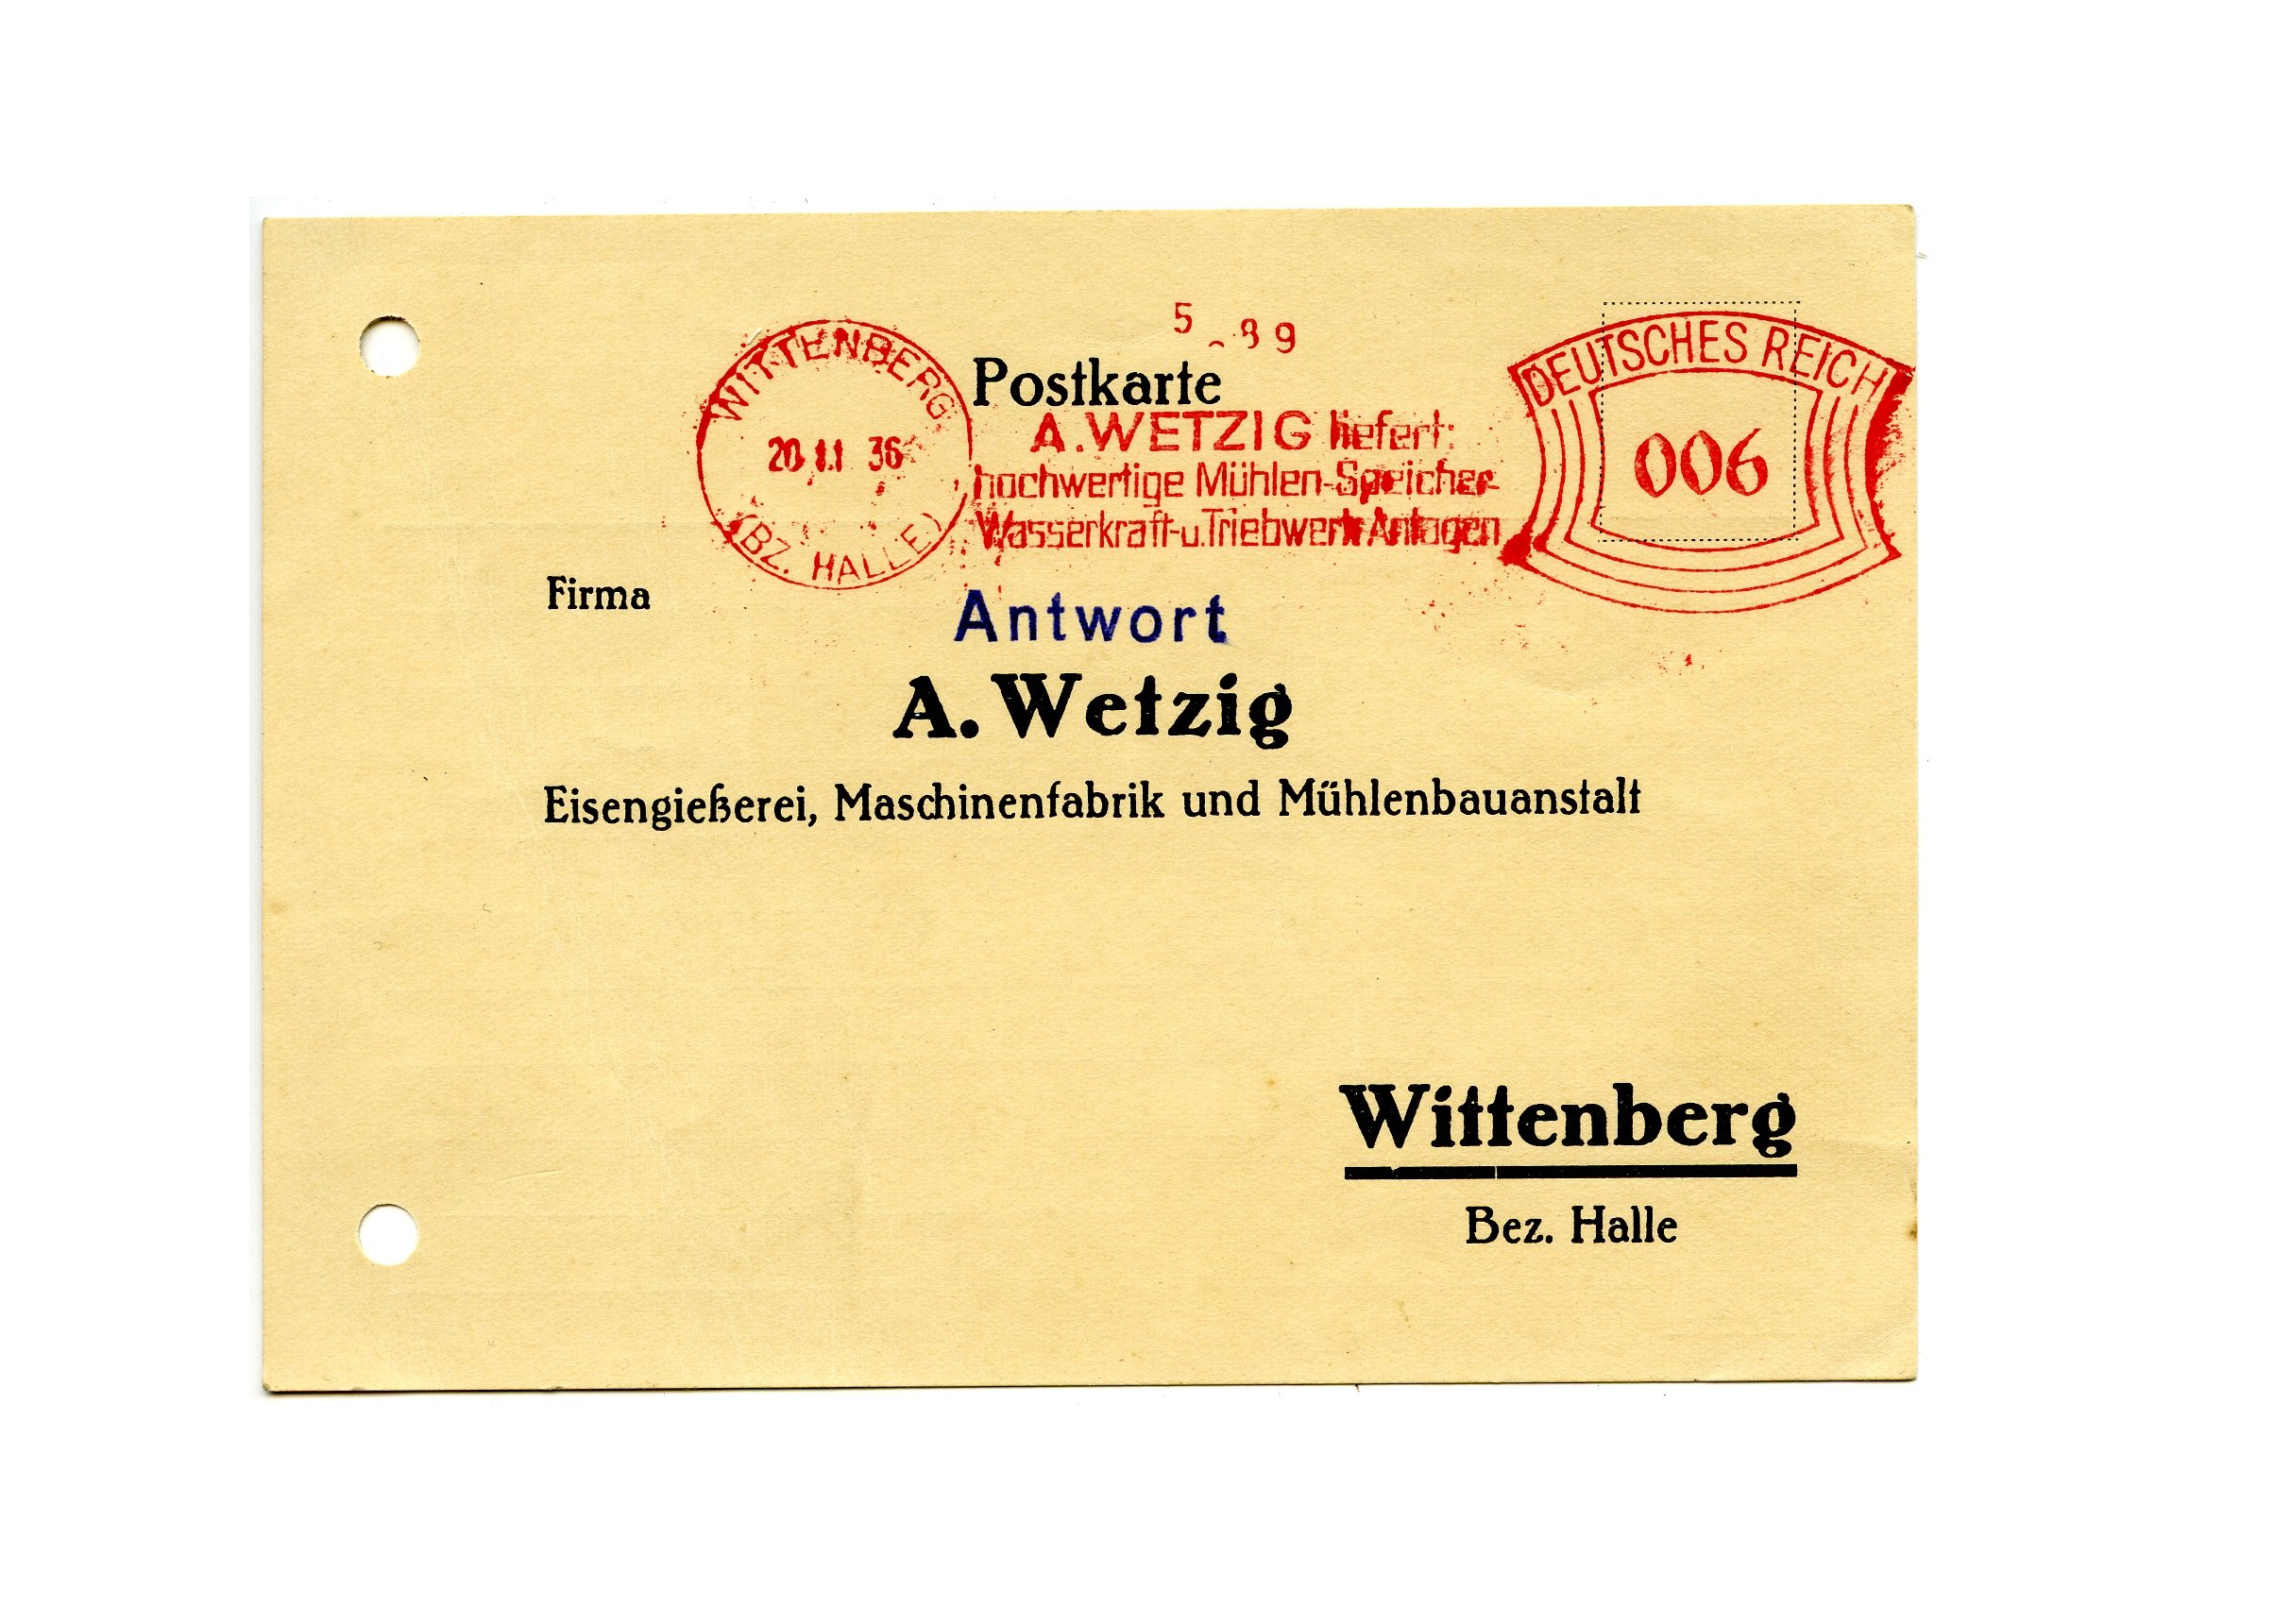 Postkarte der Fa. A. Wetzig. (Historische Mühle von Sanssouci CC BY-NC-SA)